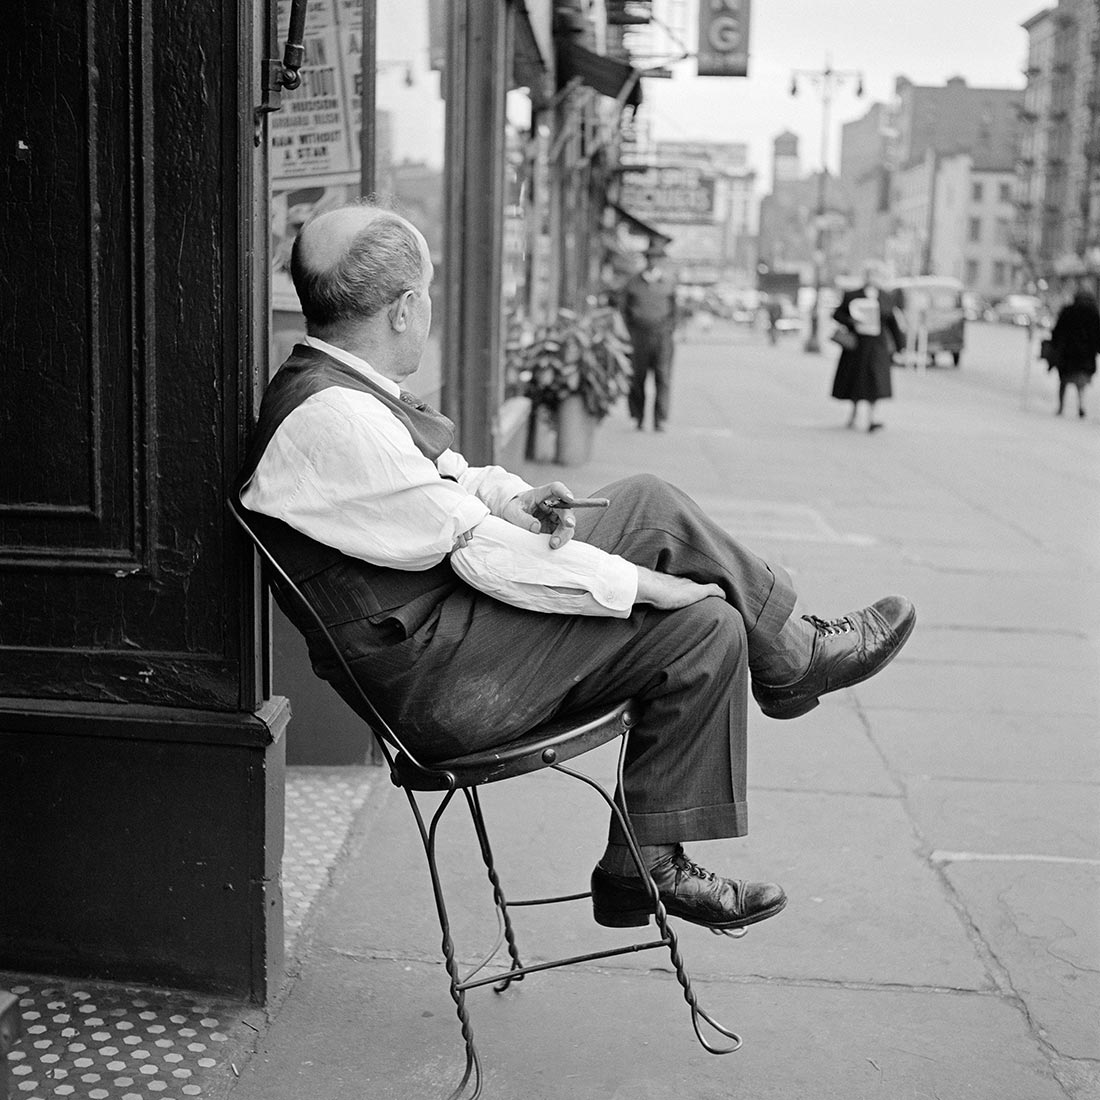 1956, New York, NY